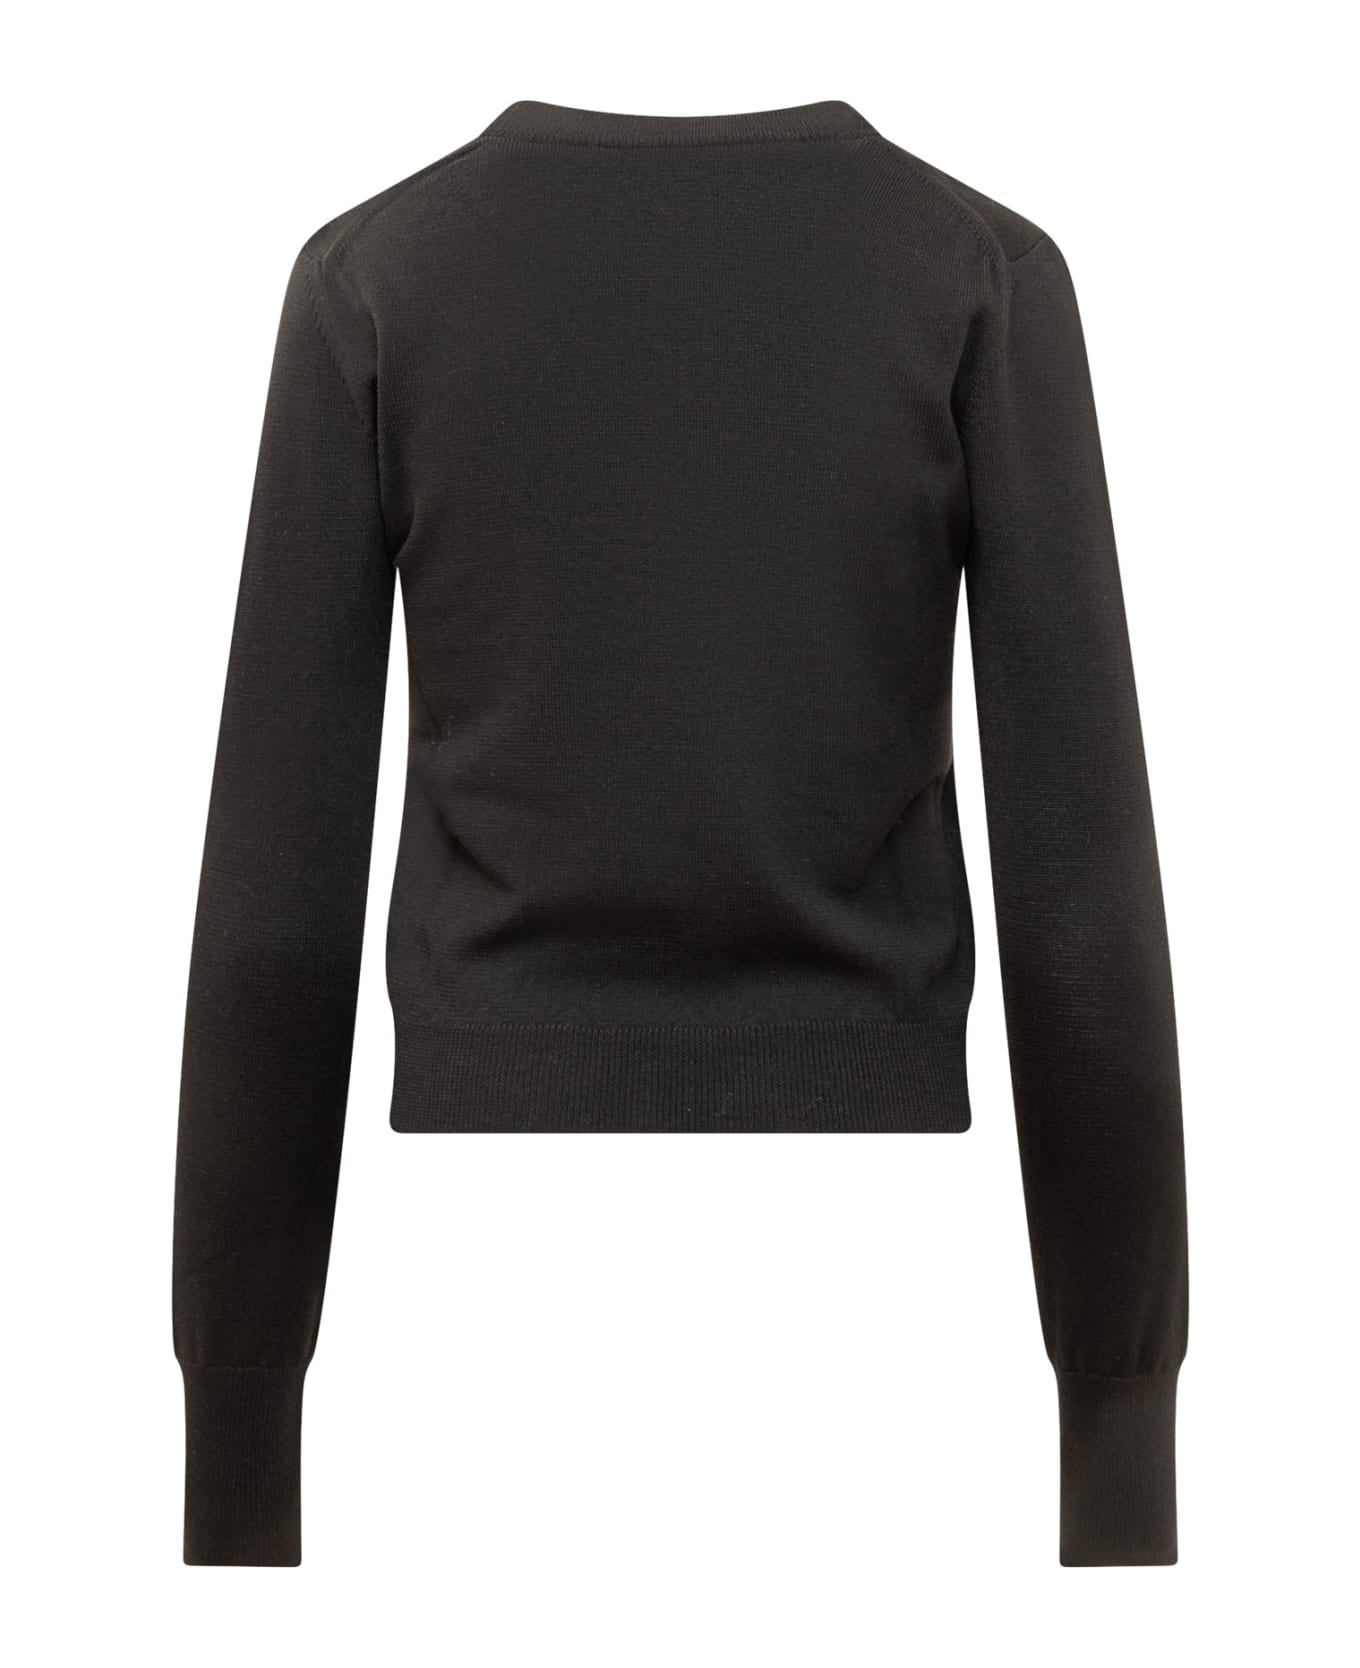 Coperni Sweater - BLACK ニットウェア